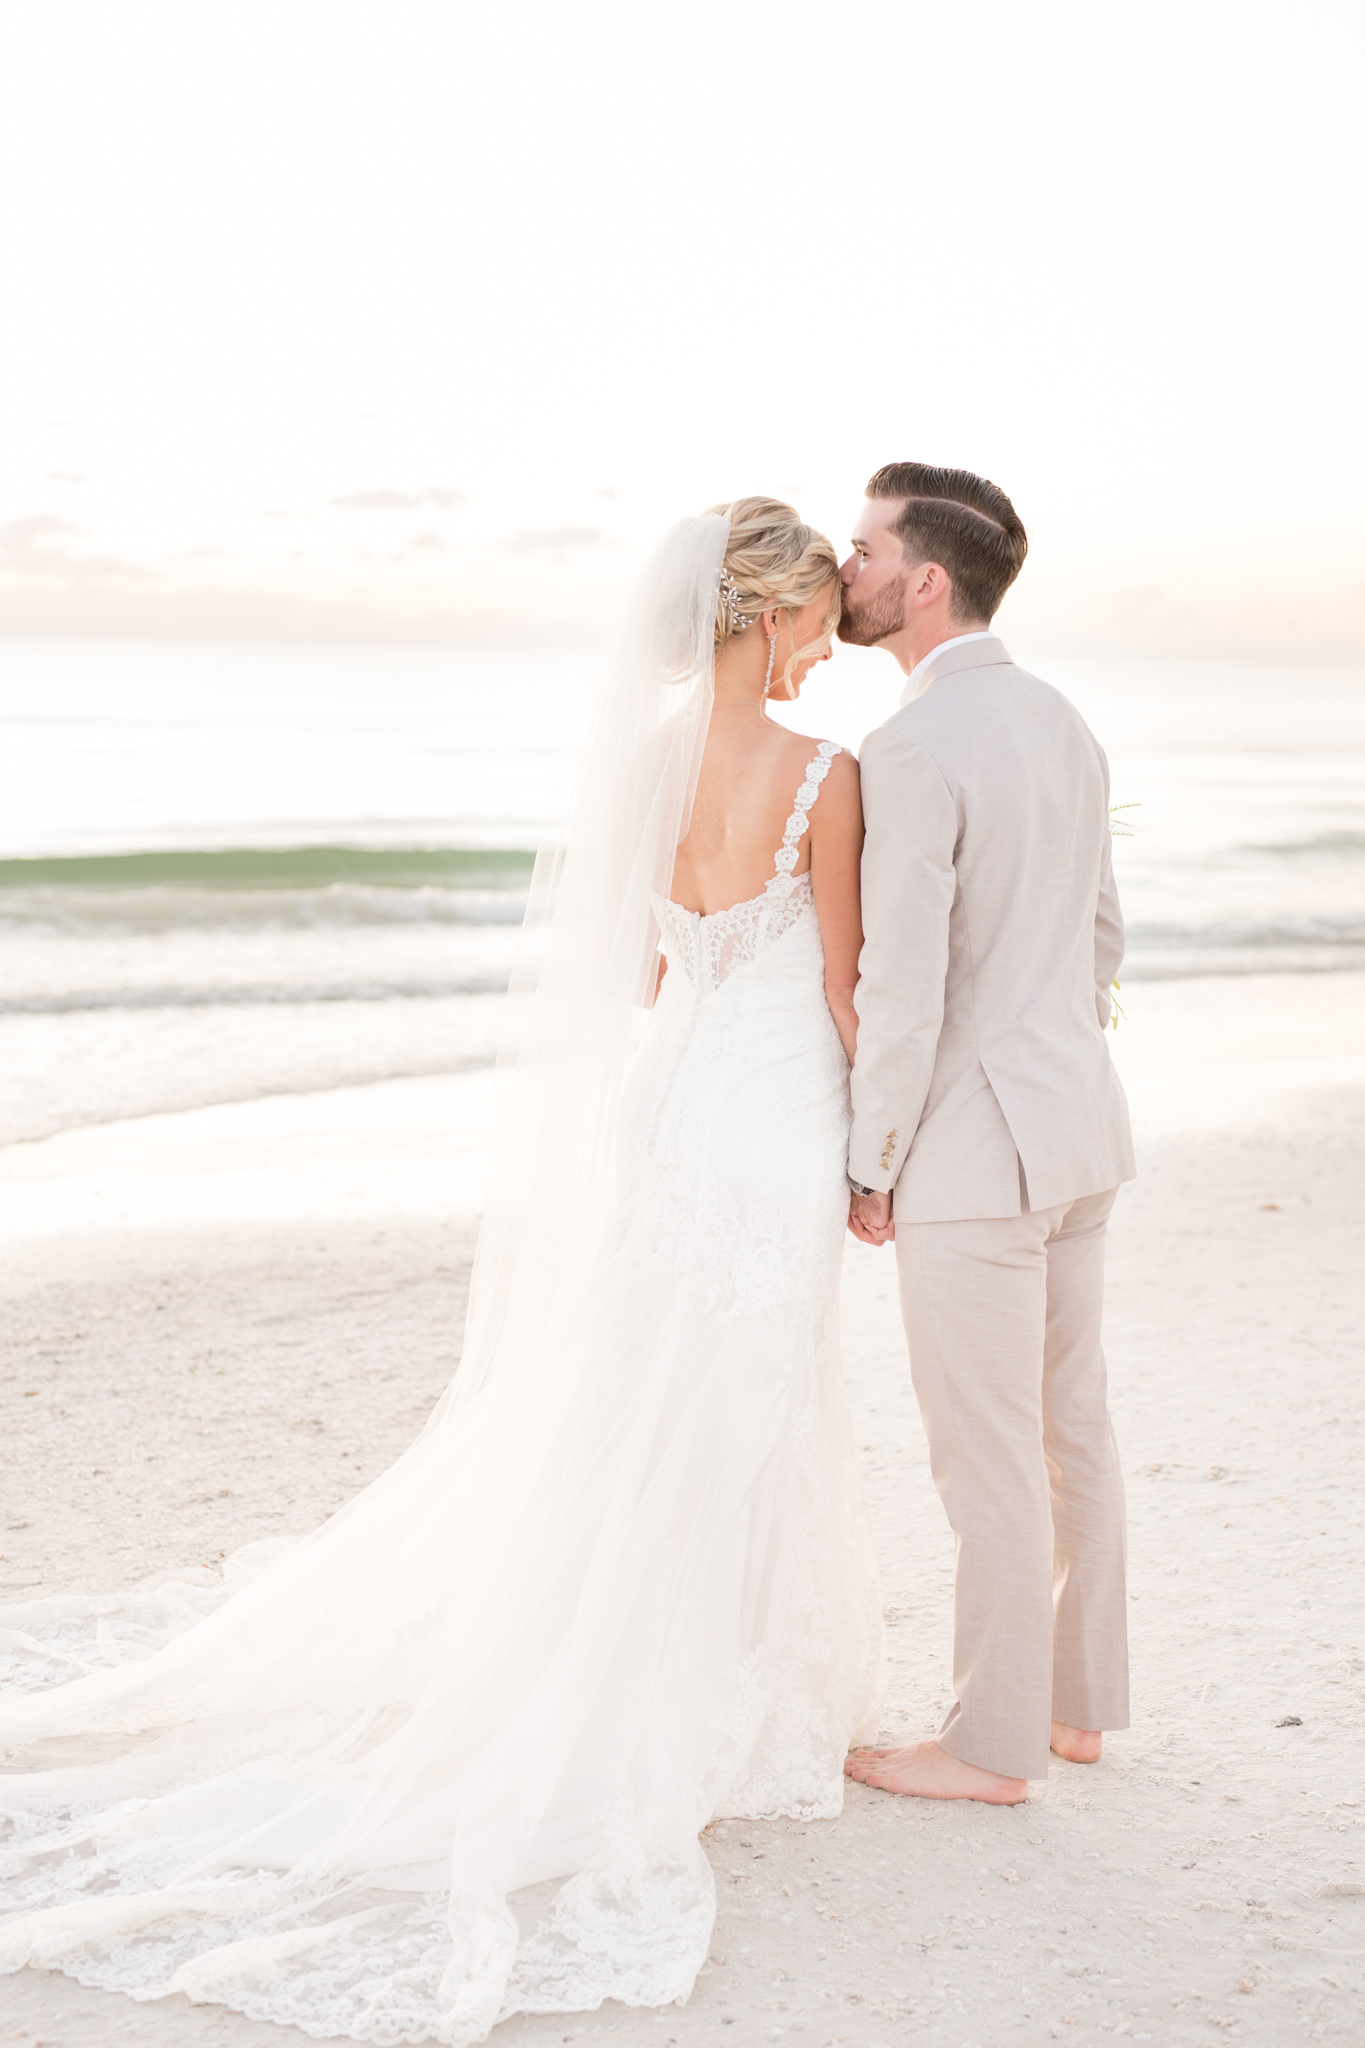 Groom kisses bride on forehead on beach.